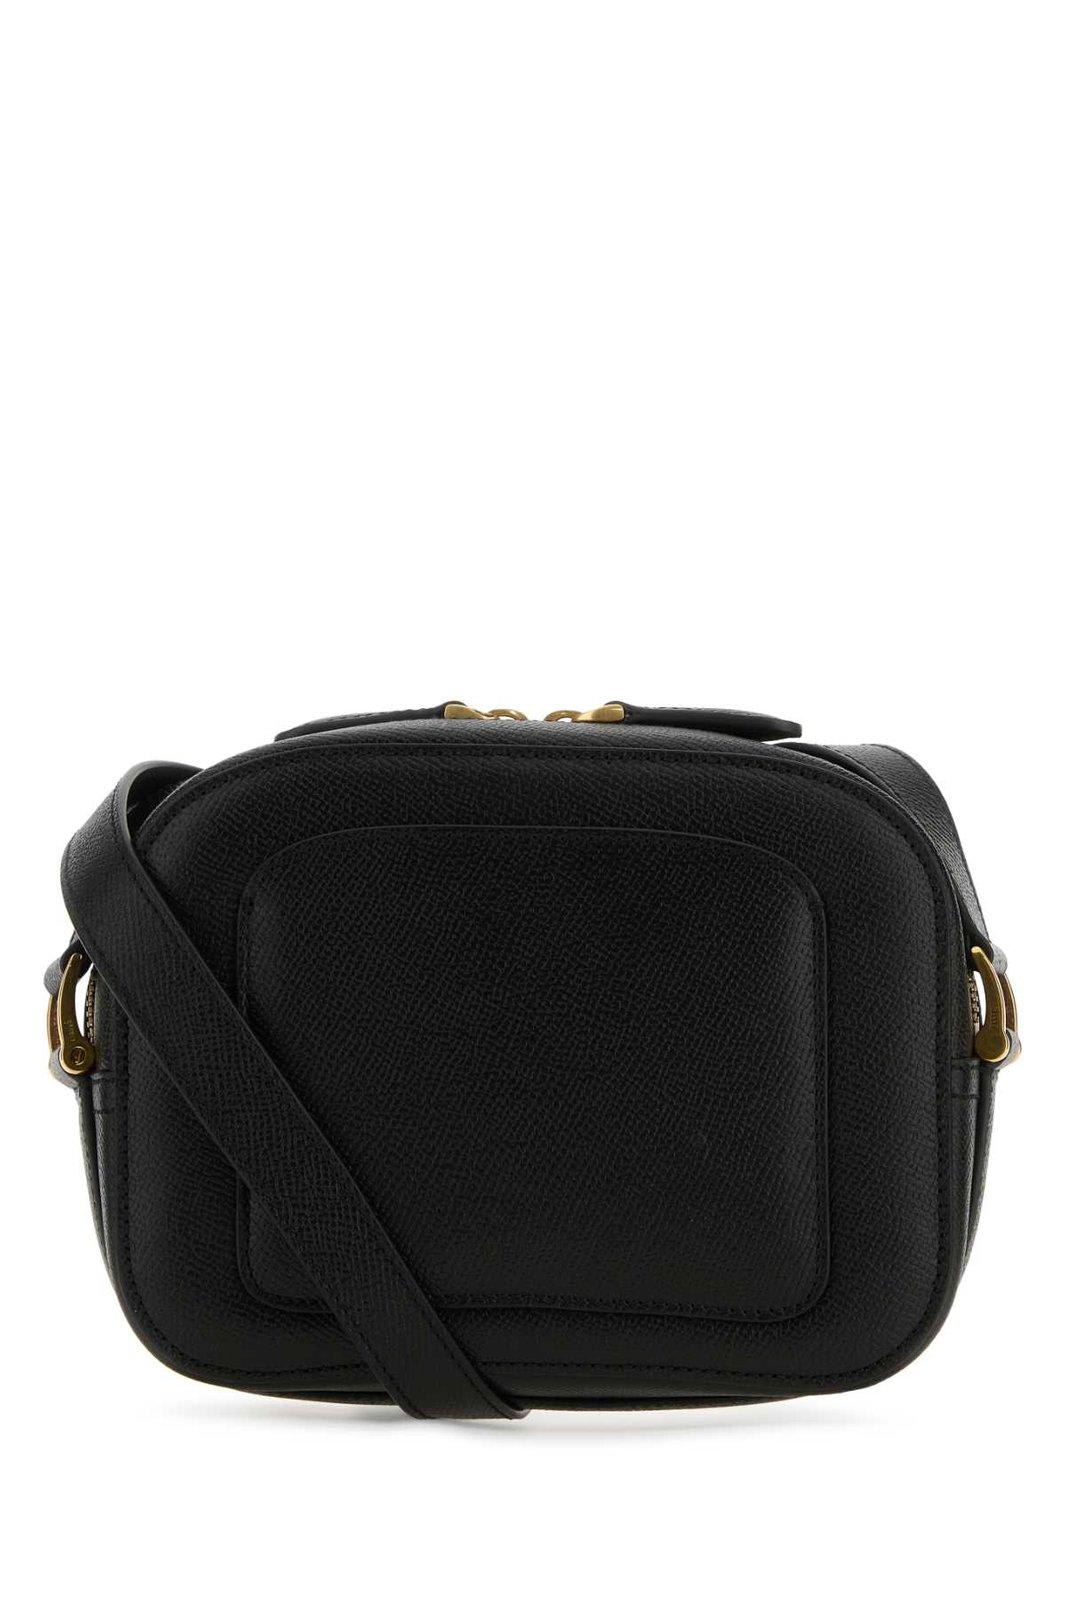 Shop Ami Alexandre Mattiussi Logo Plaque Zipped Handbag In Black